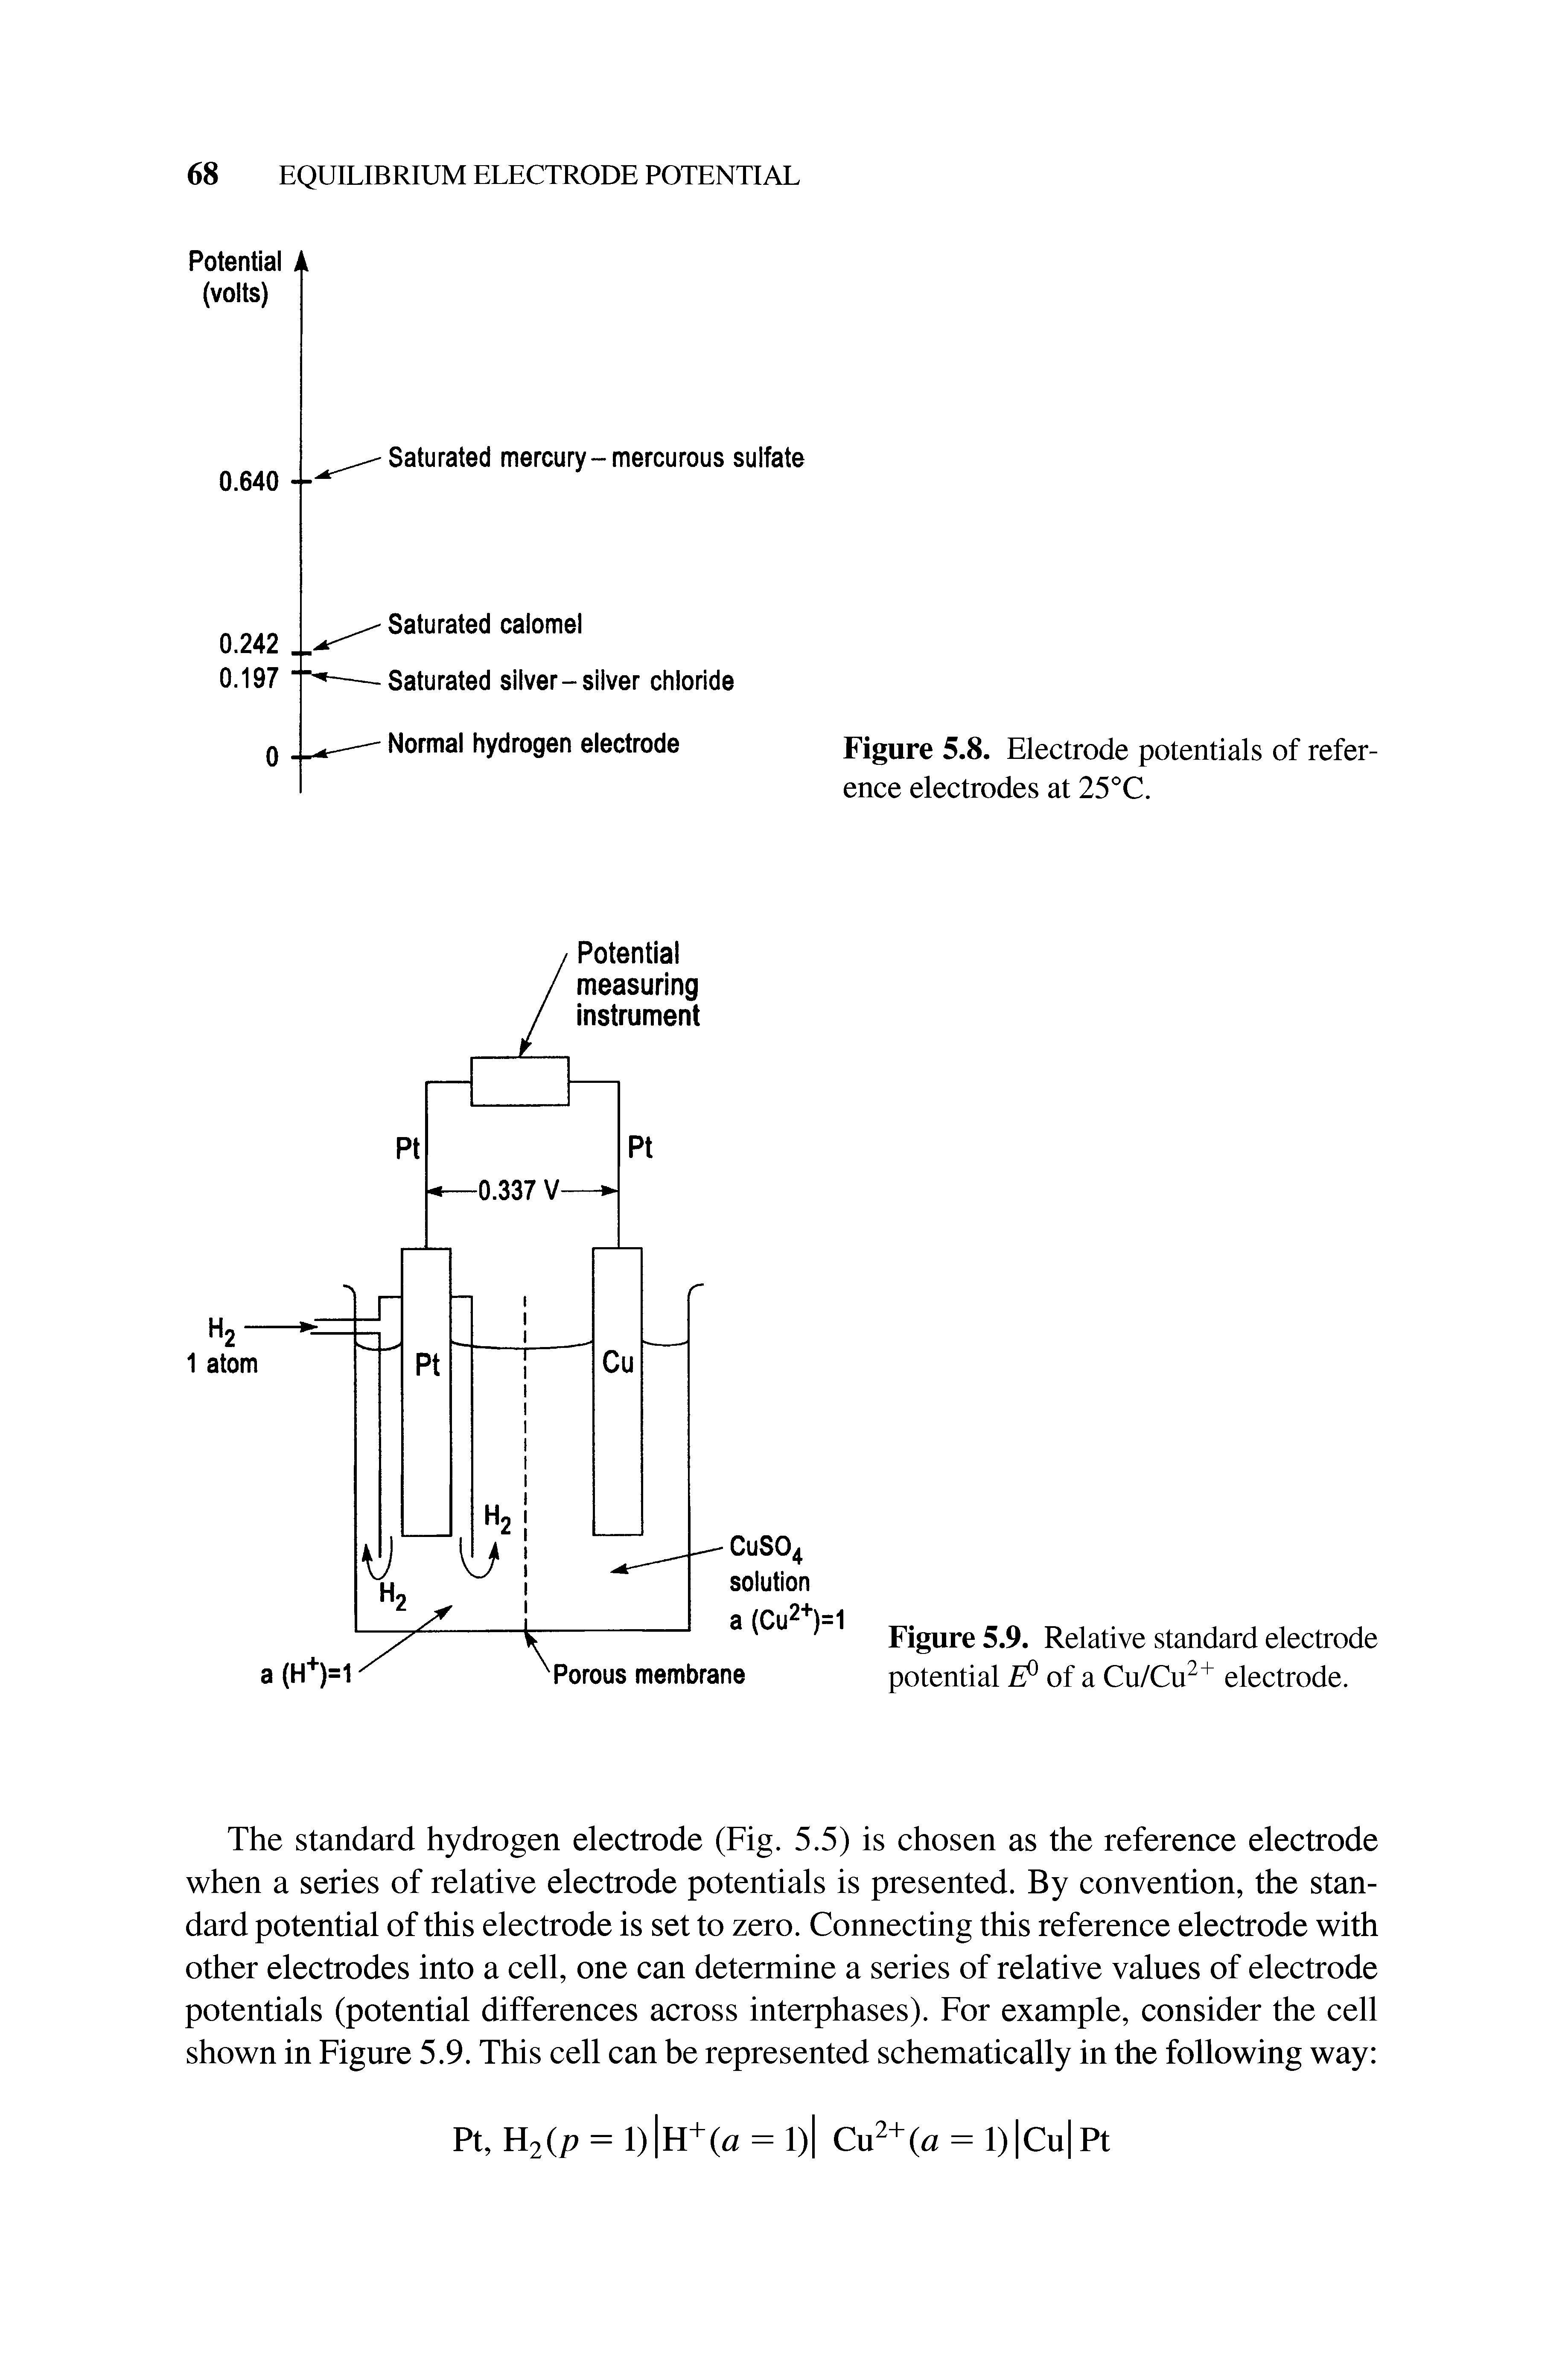 Figure 5.9. Relative standard electrode potential of a Cu/Cu electrode.